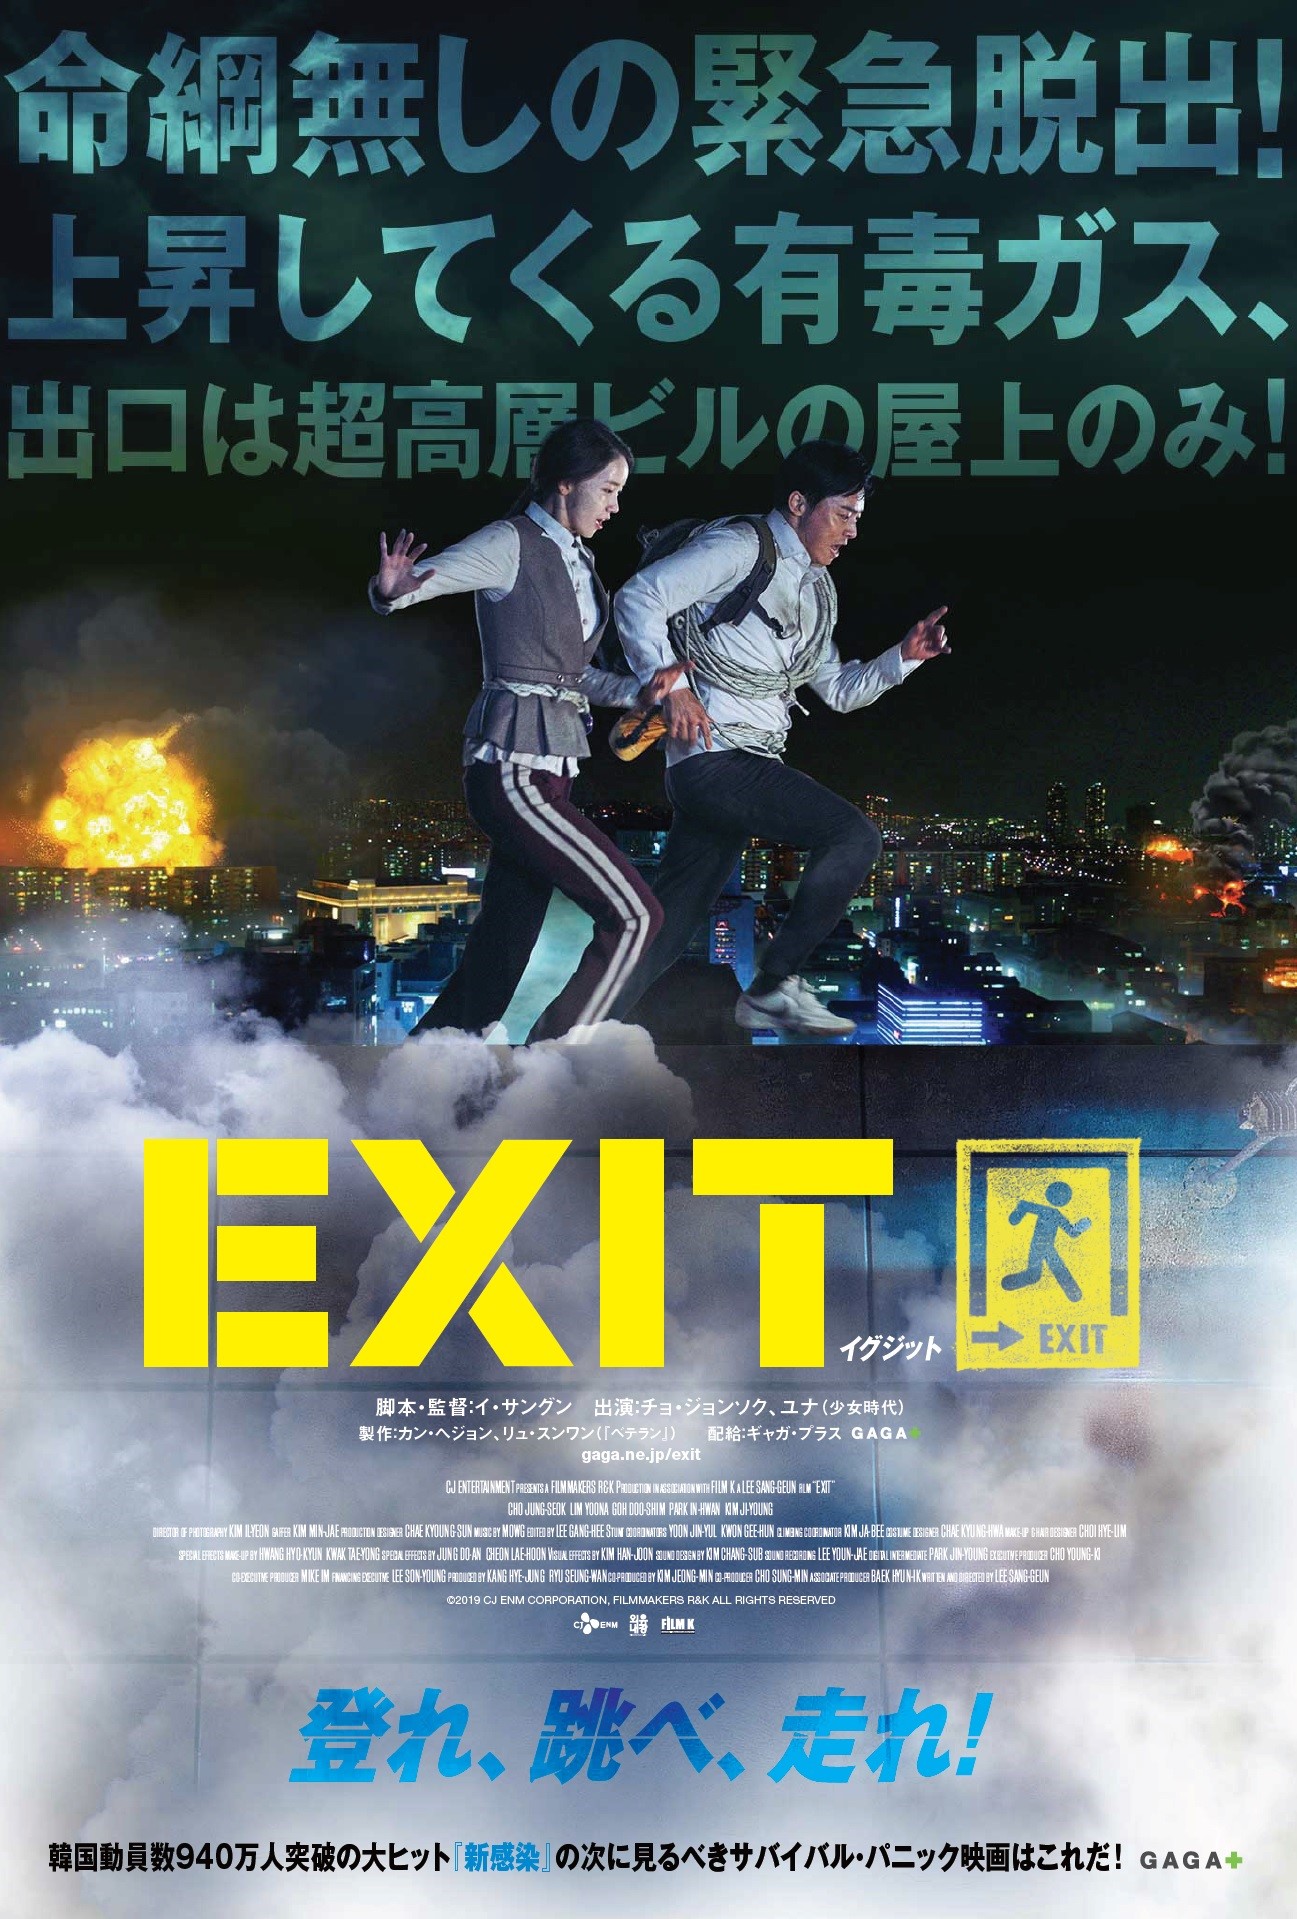 ユナ主演韓国映画 Exit の日本公開 日本版ポスタービジュアル解禁 少女時代